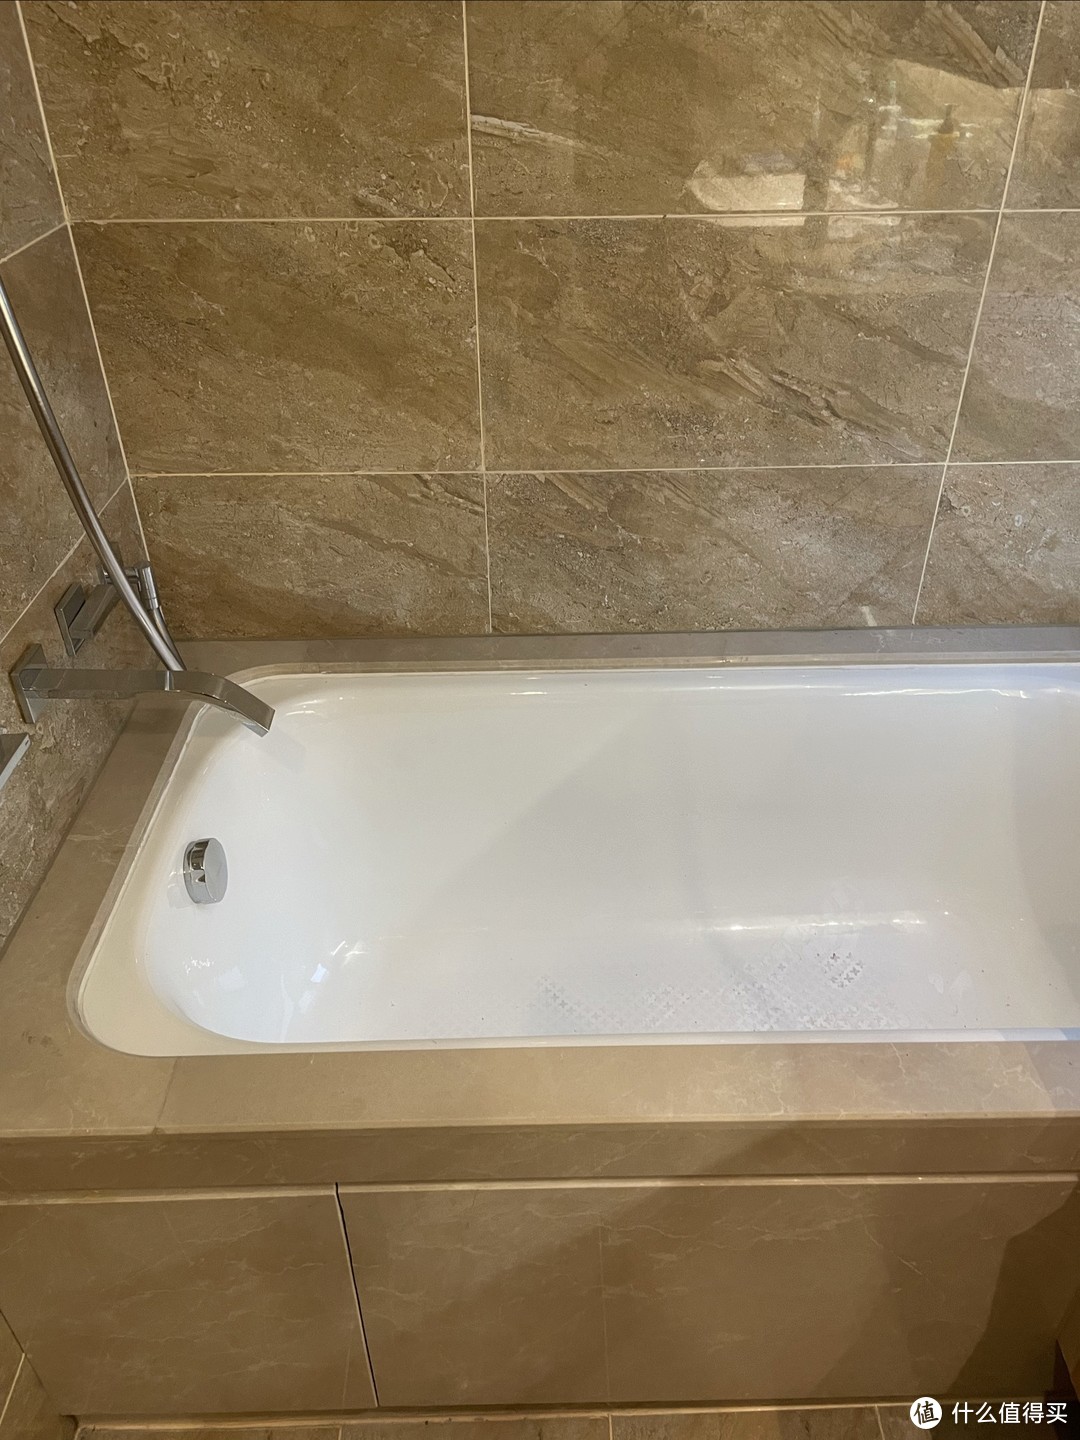 浴缸这种东西可有可无，安上之后就不咋用了，所以装修的时候要避免这种情况发生。